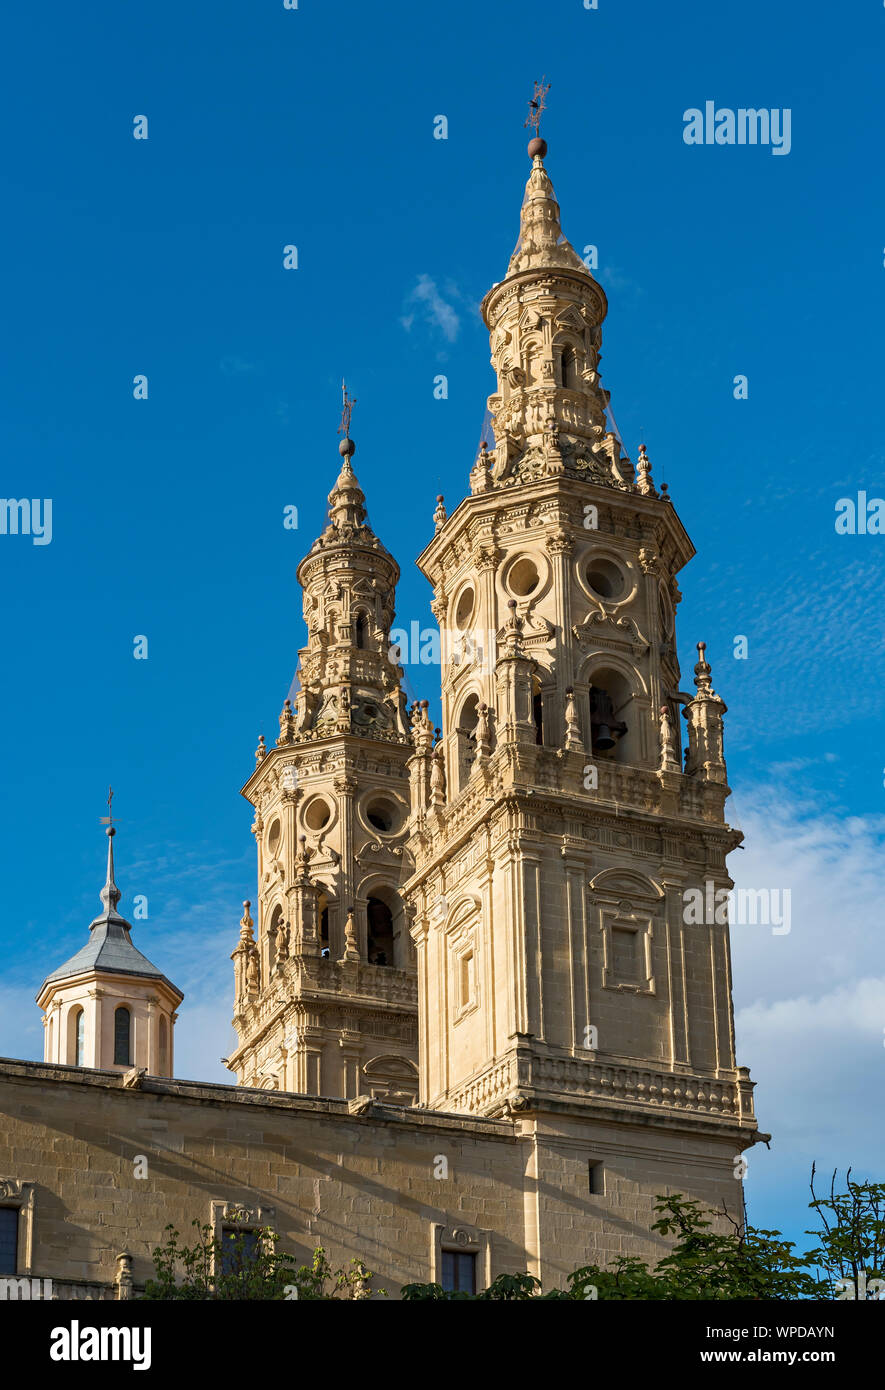 Tours de la cathédrale de Santa María de la Redonda, Logroño, La Rioja, Espagne Banque D'Images